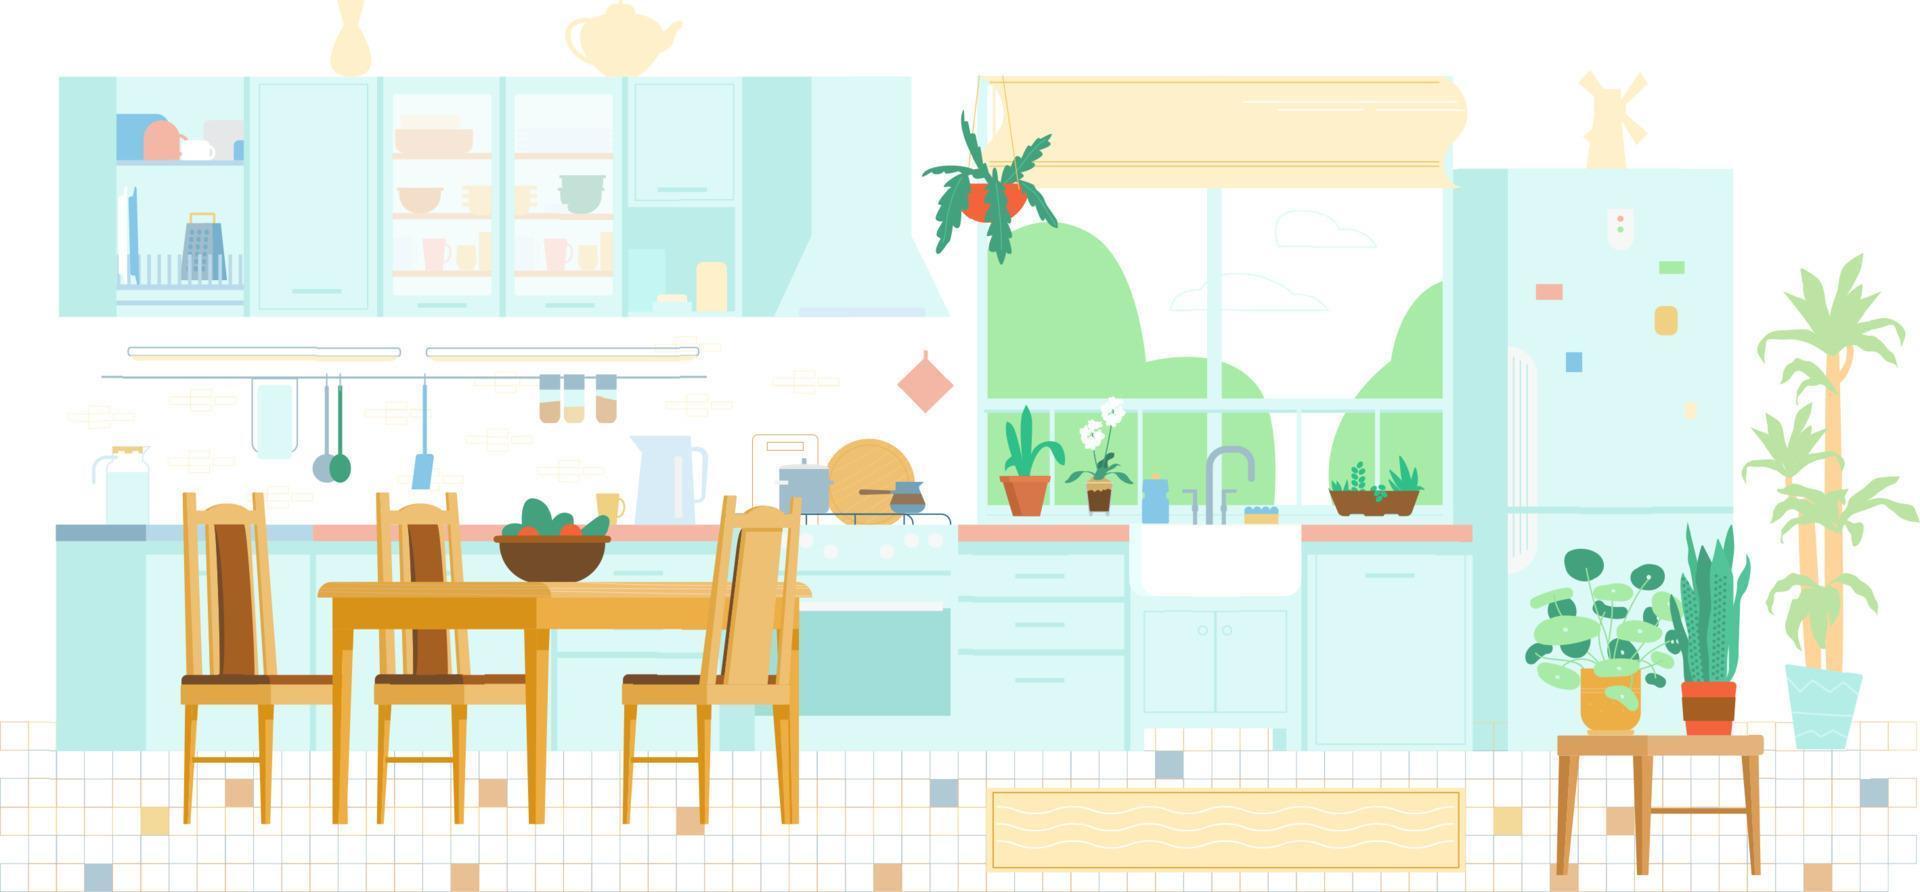 illustration vectorielle plane de fond intérieur de cuisine. meuble en bois, table avec chaises, fenêtre, plantes, cuisinière, ustensiles, réfrigérateur, étagères, évier, égouttoir à assiettes. vecteur